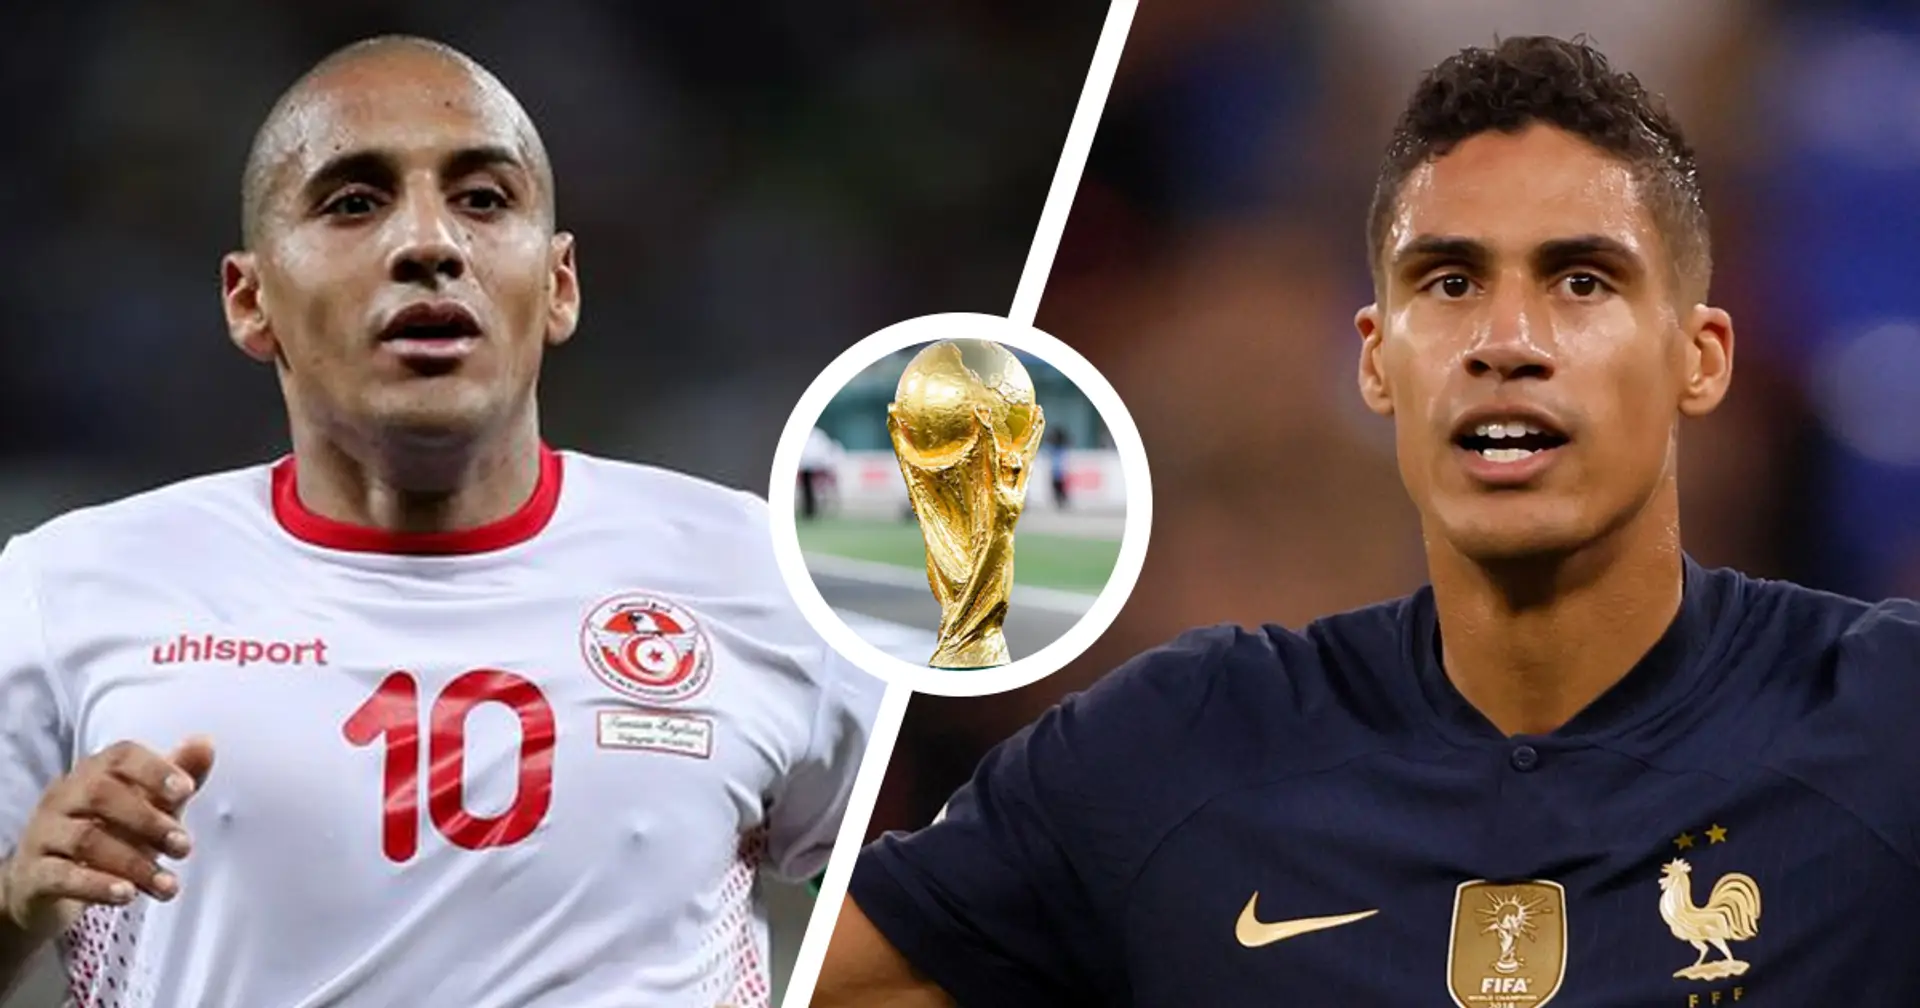 Tunisia vs Francia: le formazioni ufficiali delle squadre per la partita della Coppa del Mondo Qatar 2022